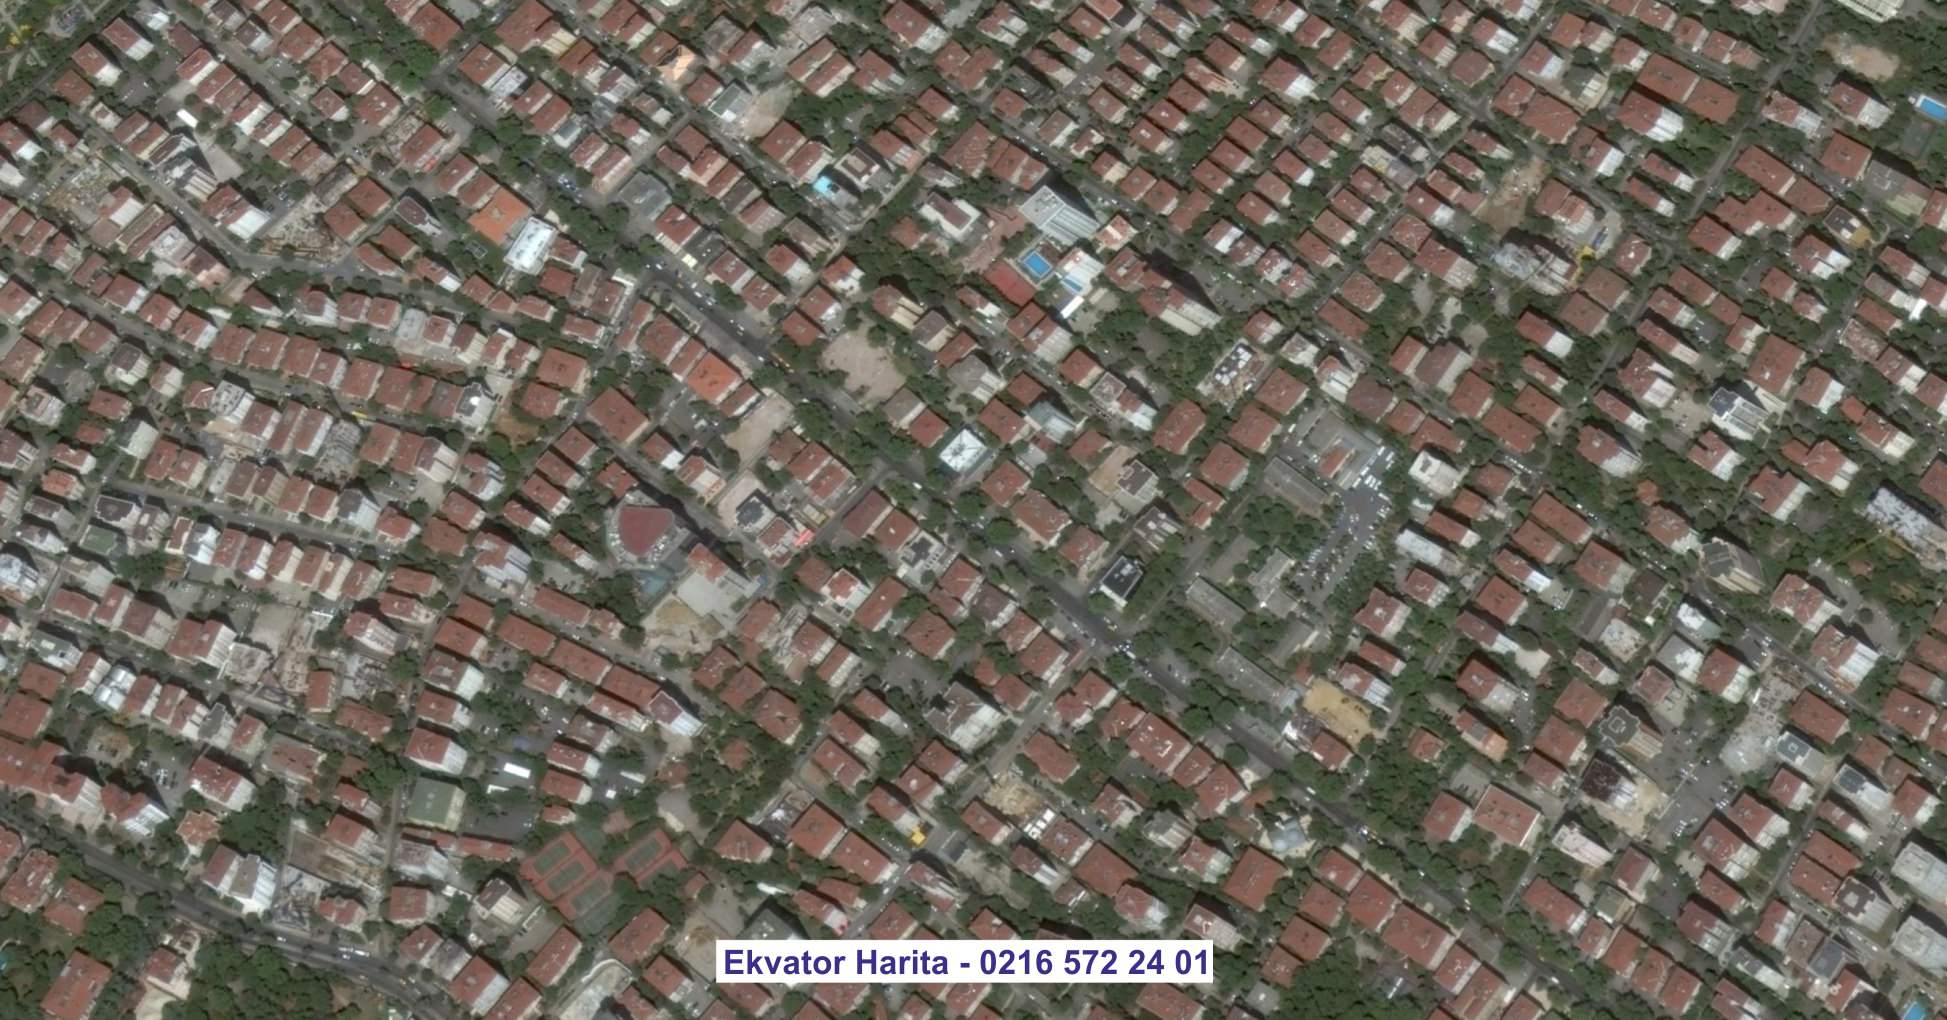 Bakırköy Uydu Görüntüsü Örnek Fotoğrafı